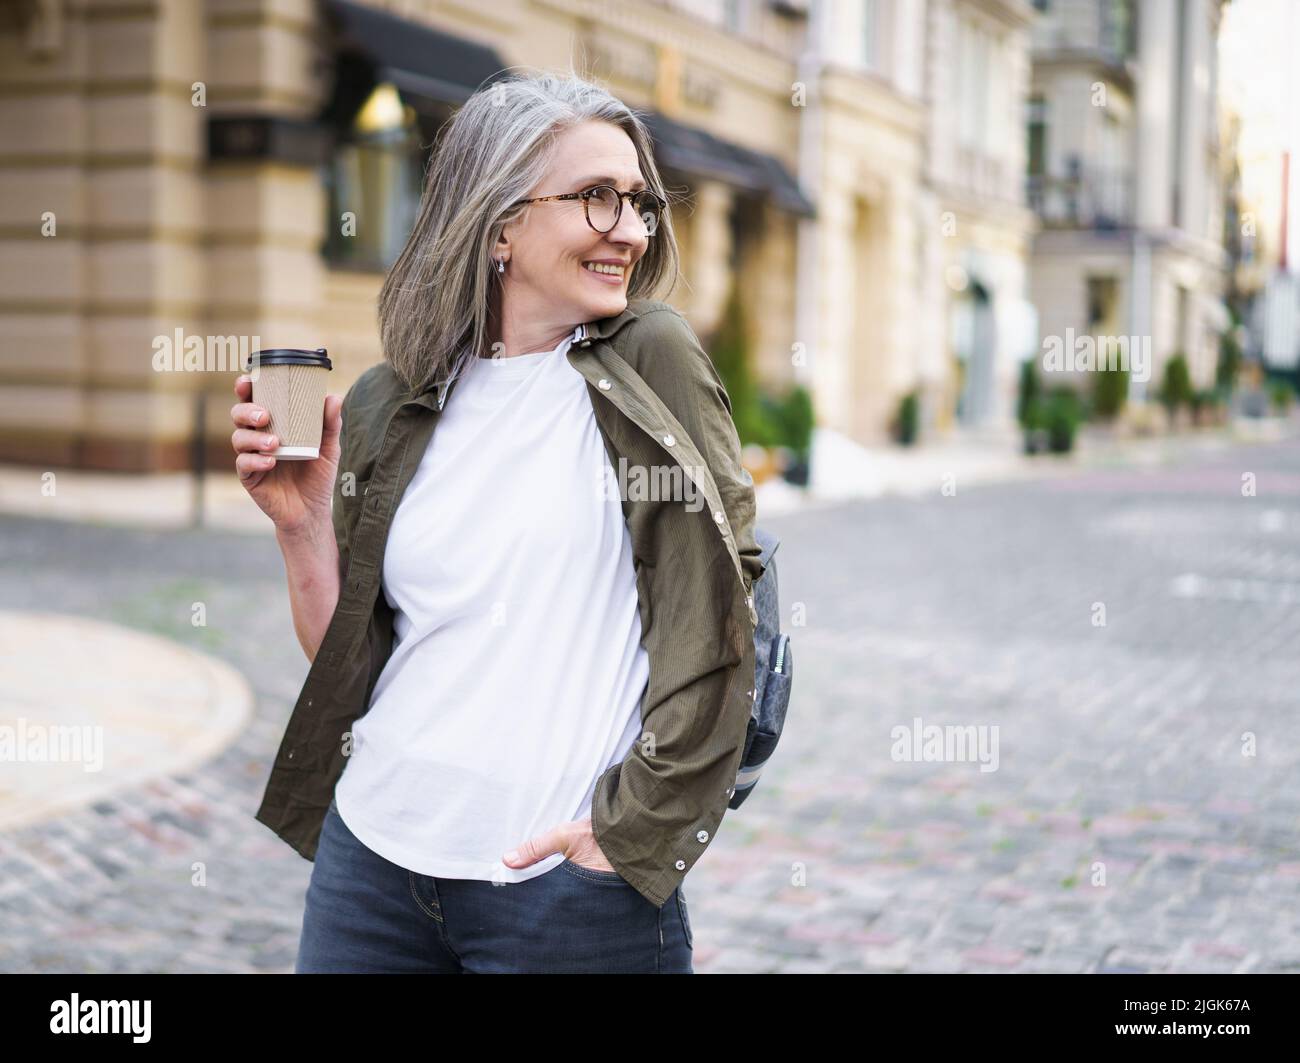 Geschäftsfrau halten Einweg-Tasse mit heißem Kaffee. Die reife Frau verbringt ihre Freizeit in der europäischen Altstadt und genießt eine Tasse Tee und Kaffee. Grauhaarige Frau in Casual mit Rucksack. Stockfoto